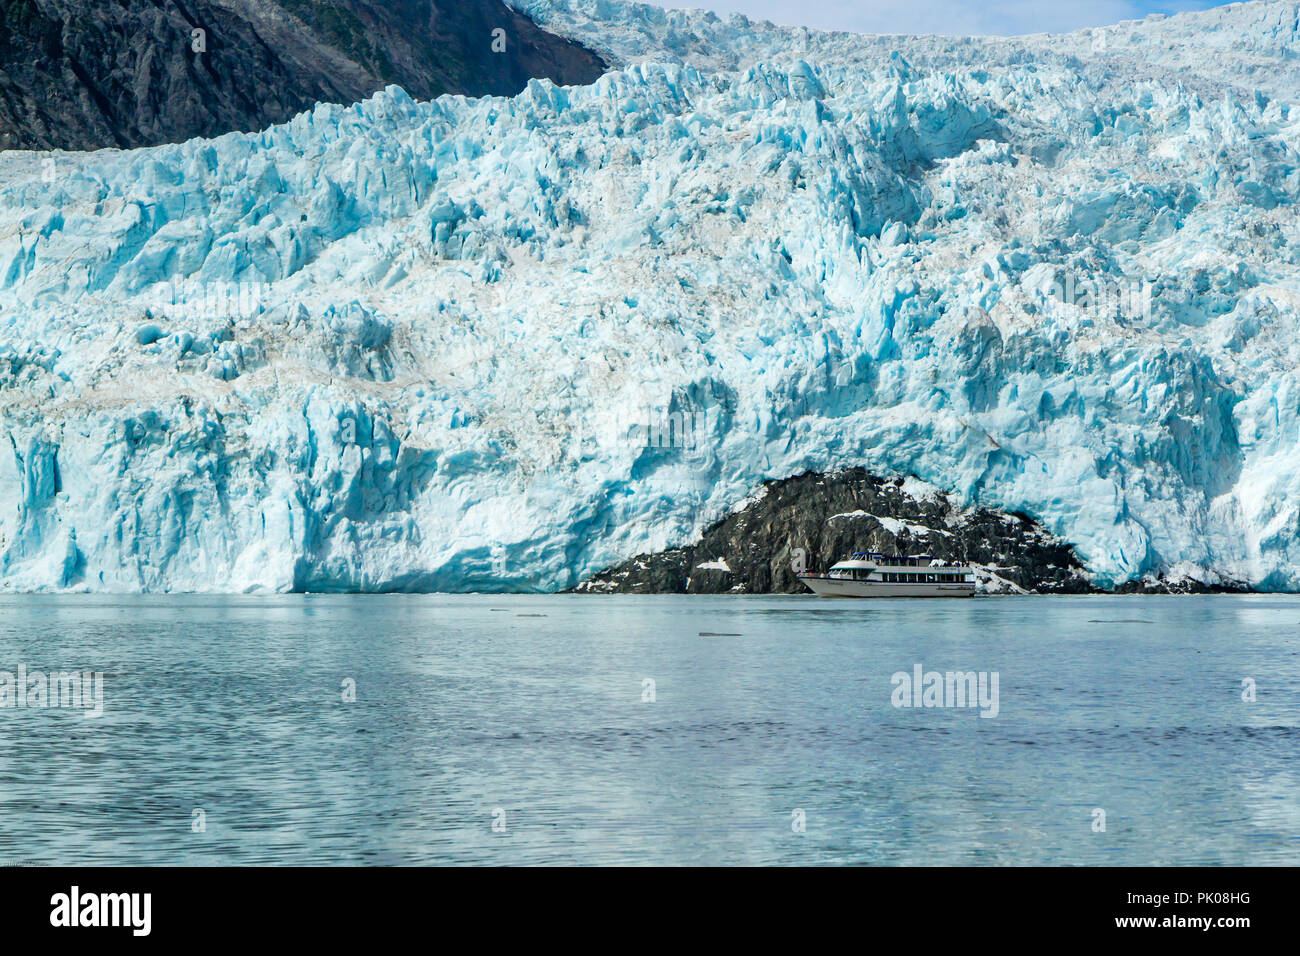 Harriman Aialik Gletscher, Bucht, Alaska, USA. Ein Katamaran wird durch die riesige blaue Eis Gletscher im Hintergrund in den Schatten gestellt. Stockfoto